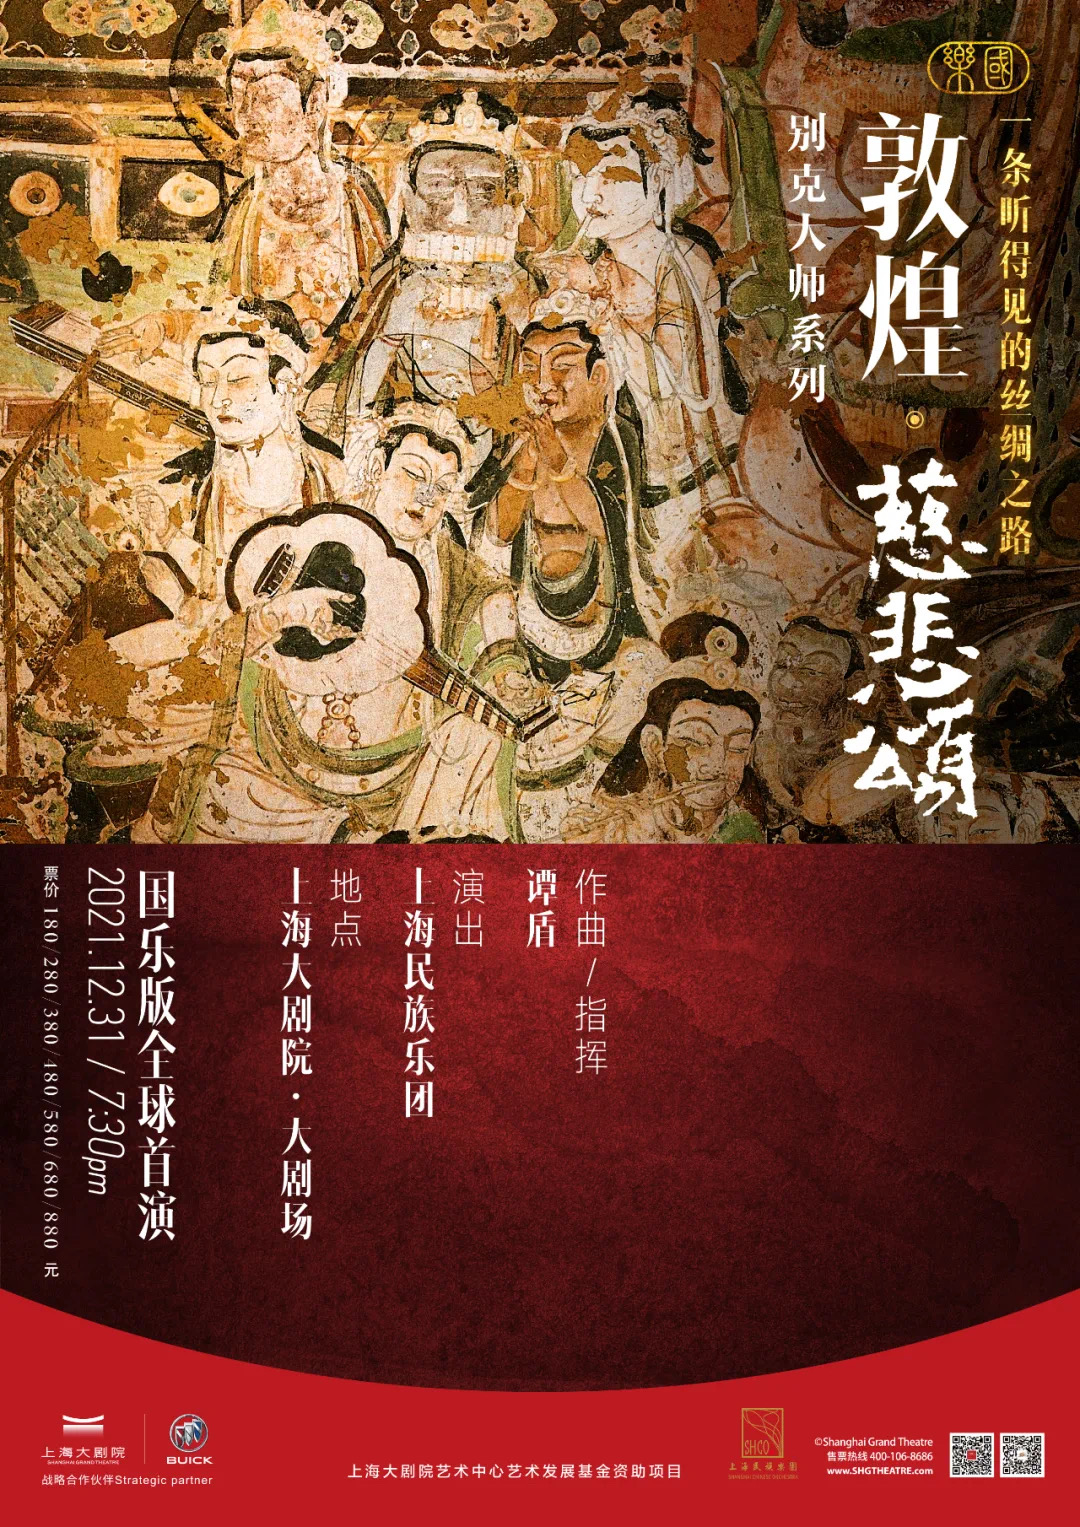 谭盾国乐《敦煌·慈悲颂》 一条听得见的丝绸之路 上海大剧院 & 上海民族乐团 2022 新年音乐会